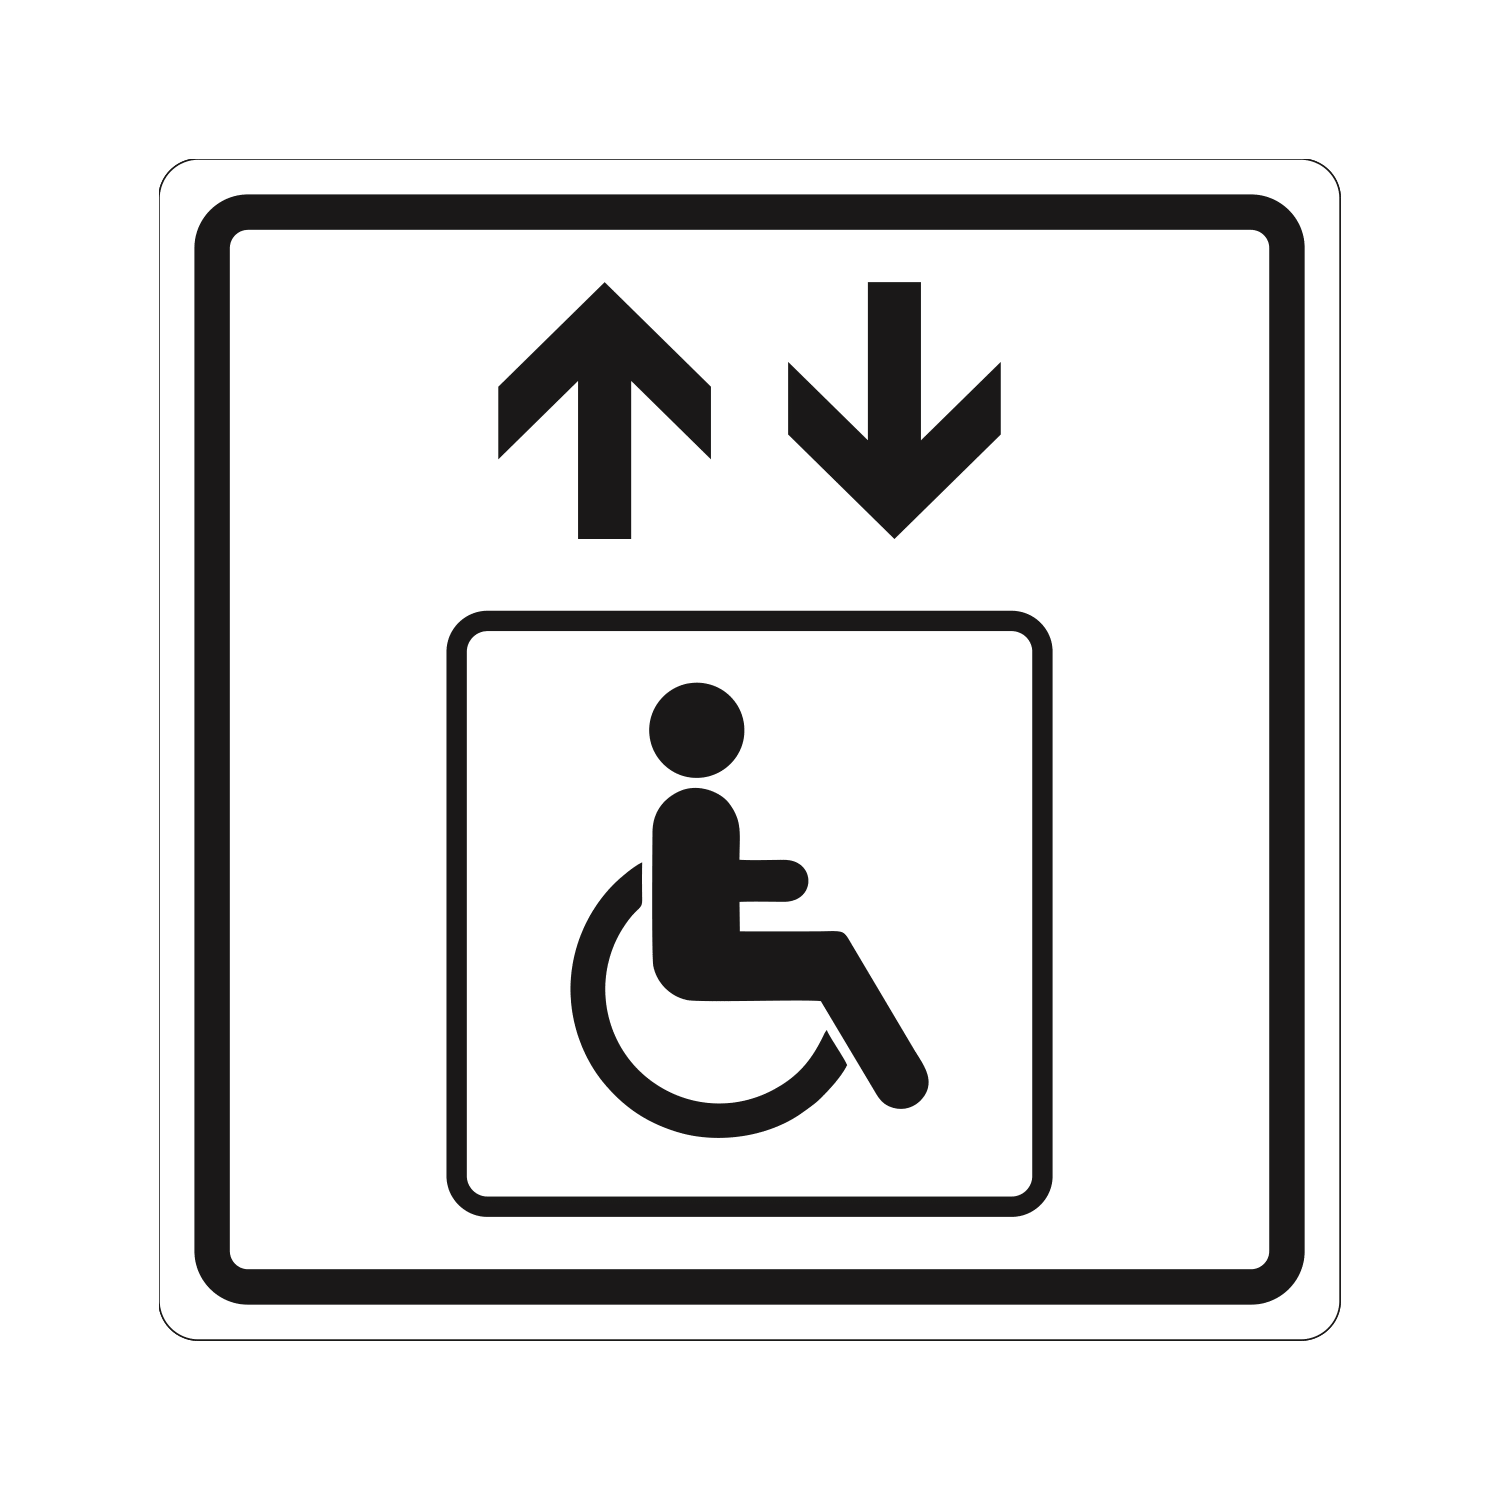 Тактильная пиктограмма лифт для инвалидов